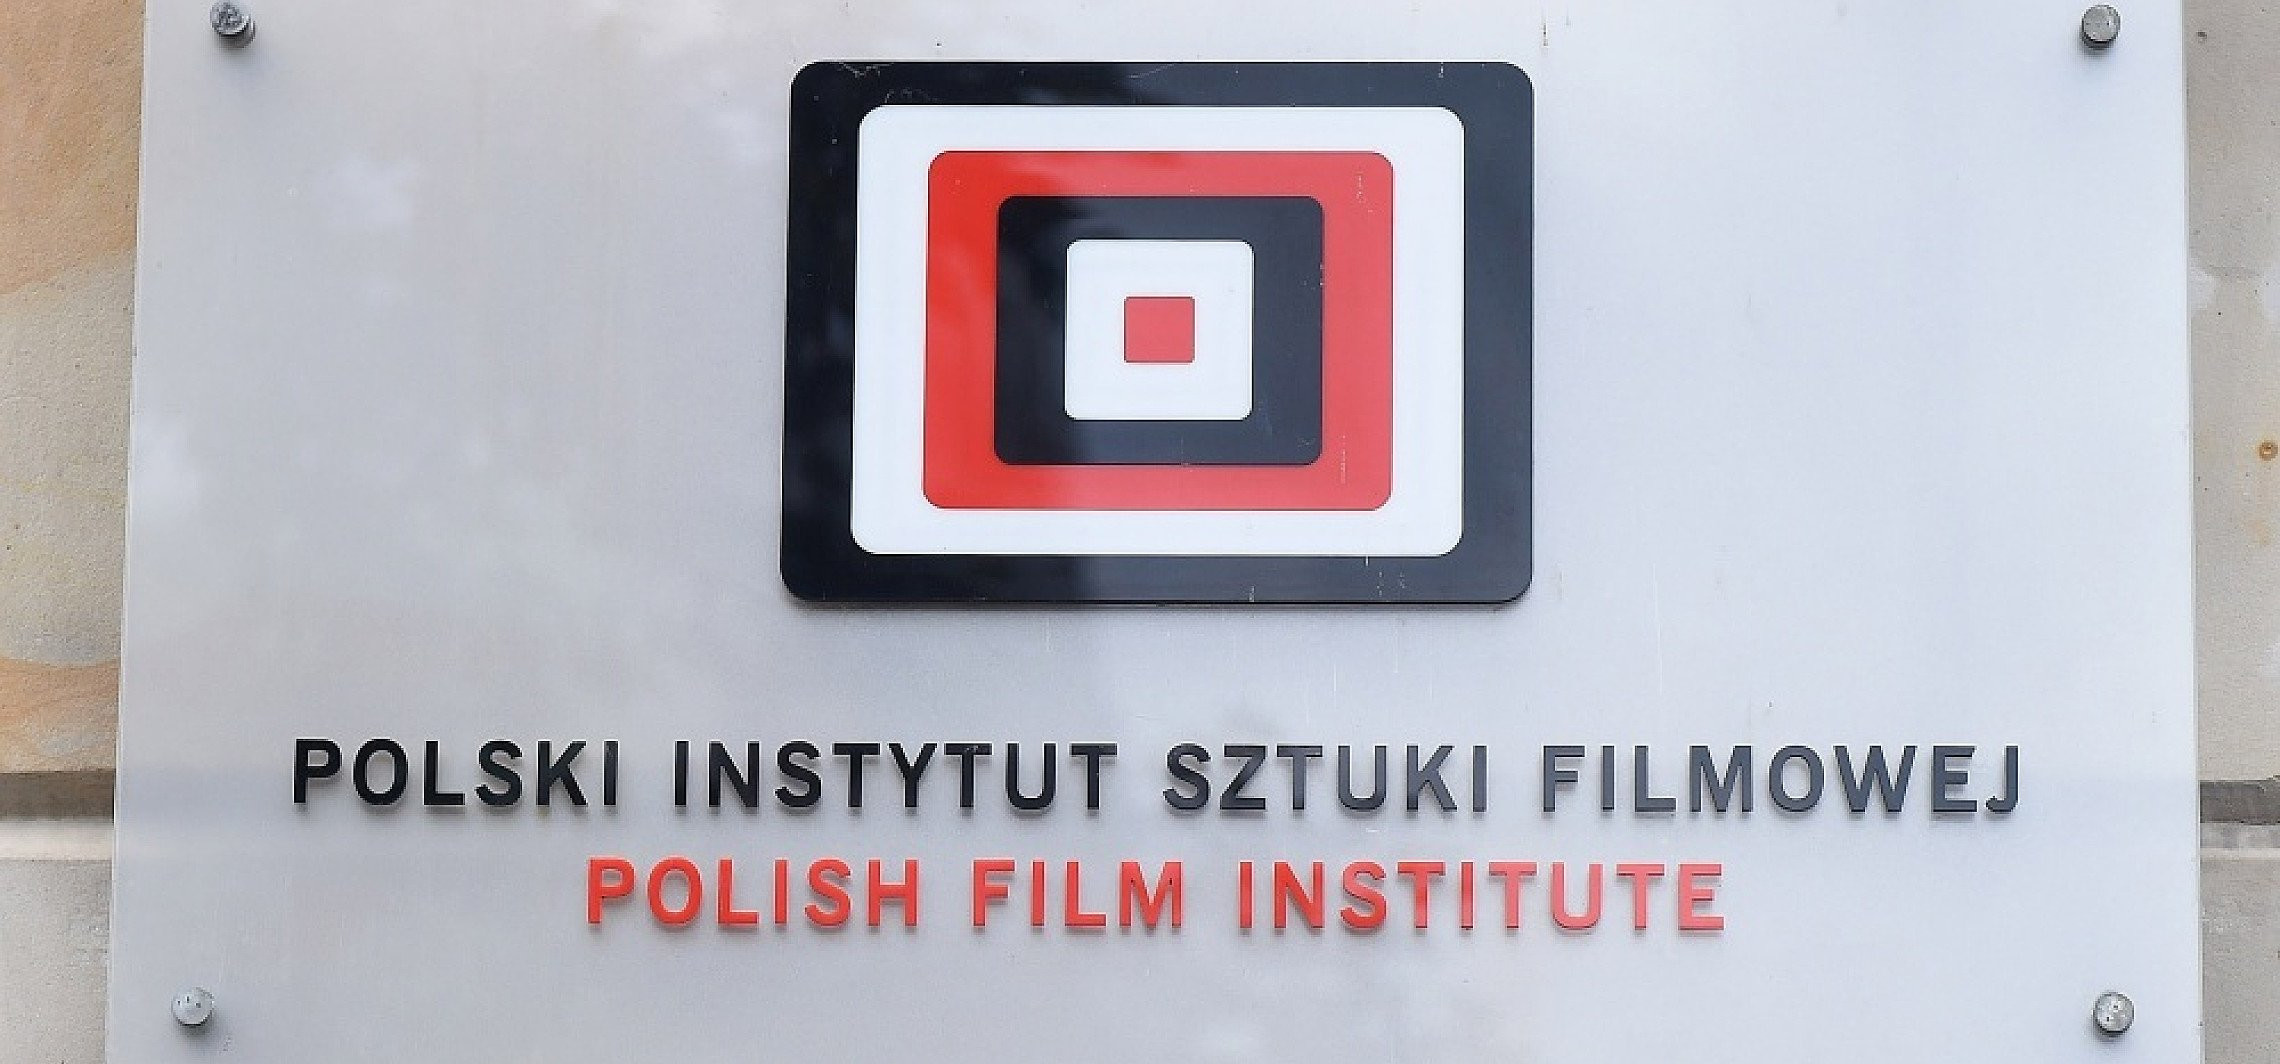 14 filmów w Konkursie Głównym 45. Festiwalu Polskich Filmów Fabularnych w Gdyni